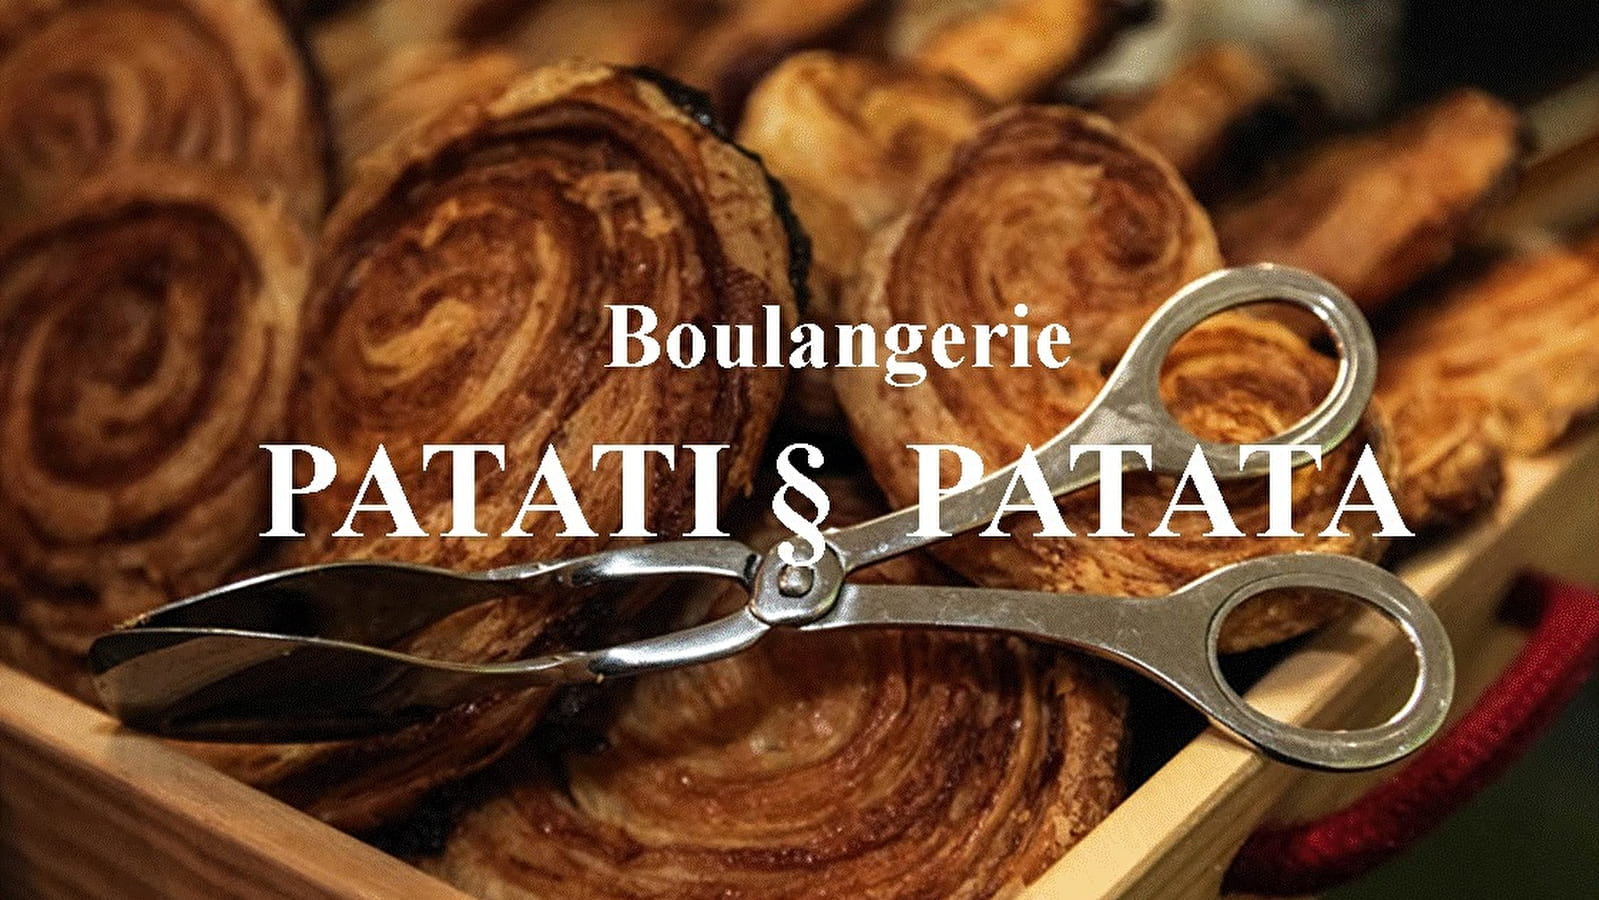 Boulangerie Patati & Patata